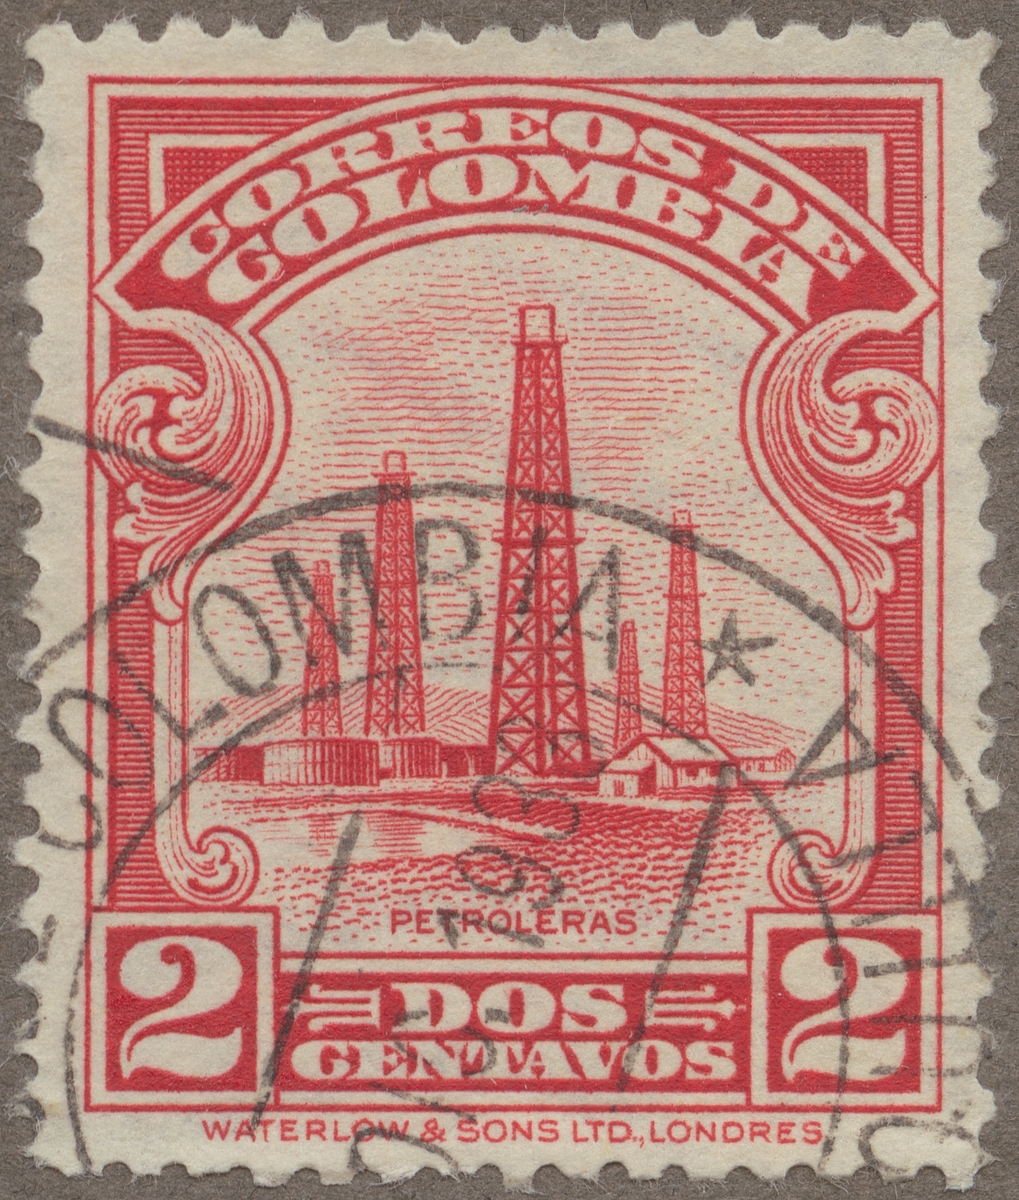 Frimärke ur Gösta Bodmans filatelistiska motivsamling, påbörjad 1950.
Frimärke från Colombia, 1932. Motiv av petroleumtorn.